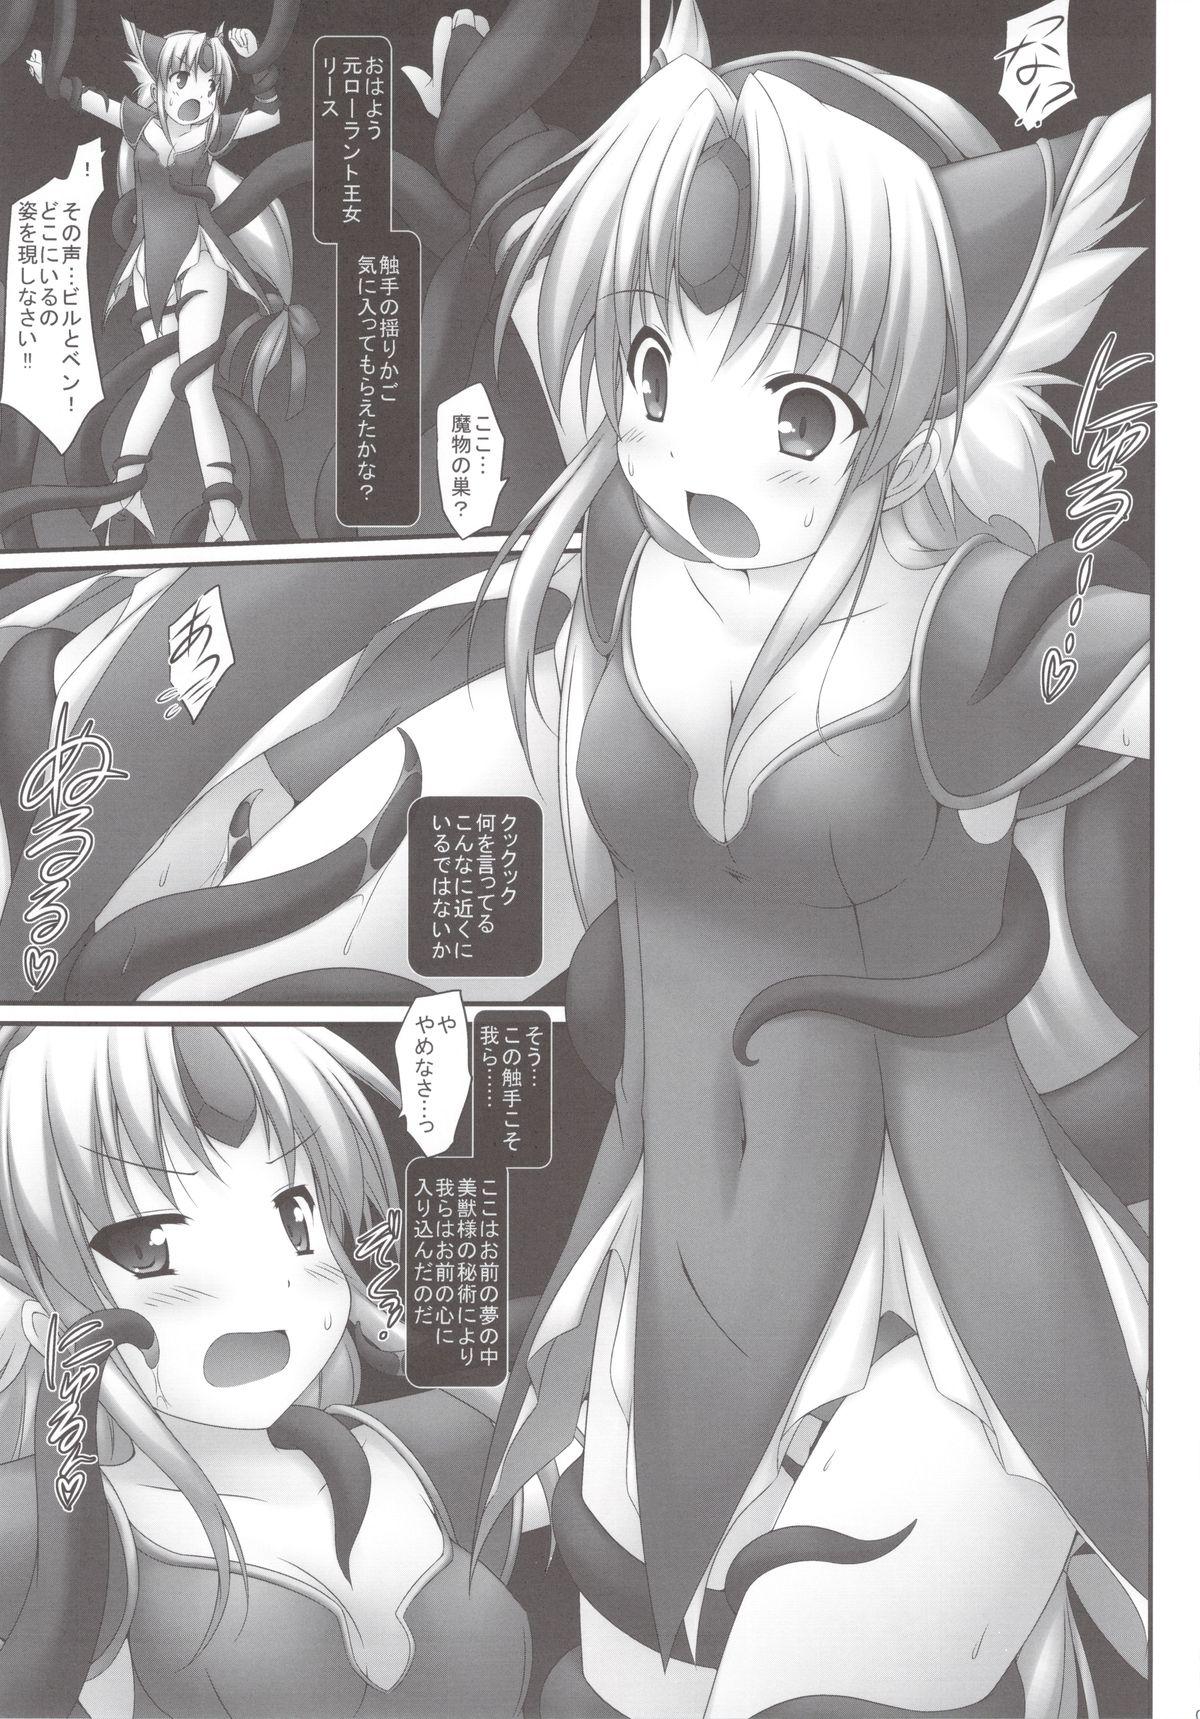 Tits Zettai ni… Makenai! - Seiken densetsu 3 Girl Gets Fucked - Page 5